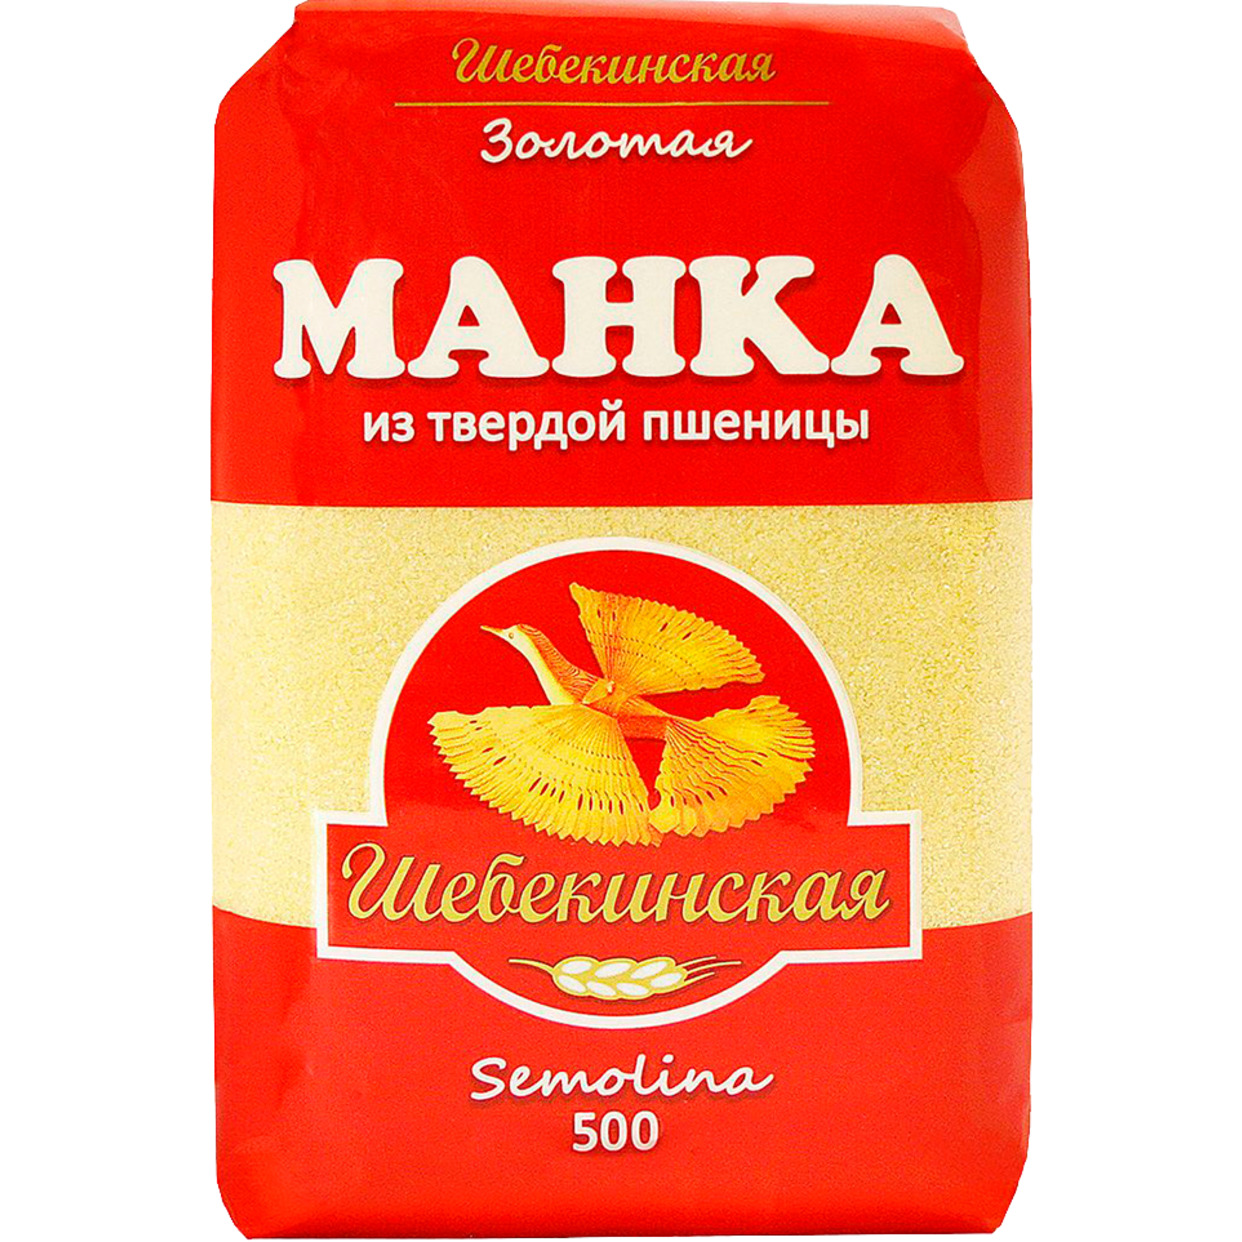 Манка Шебекинская из твердой пшеницы 500г по акции в Пятерочке